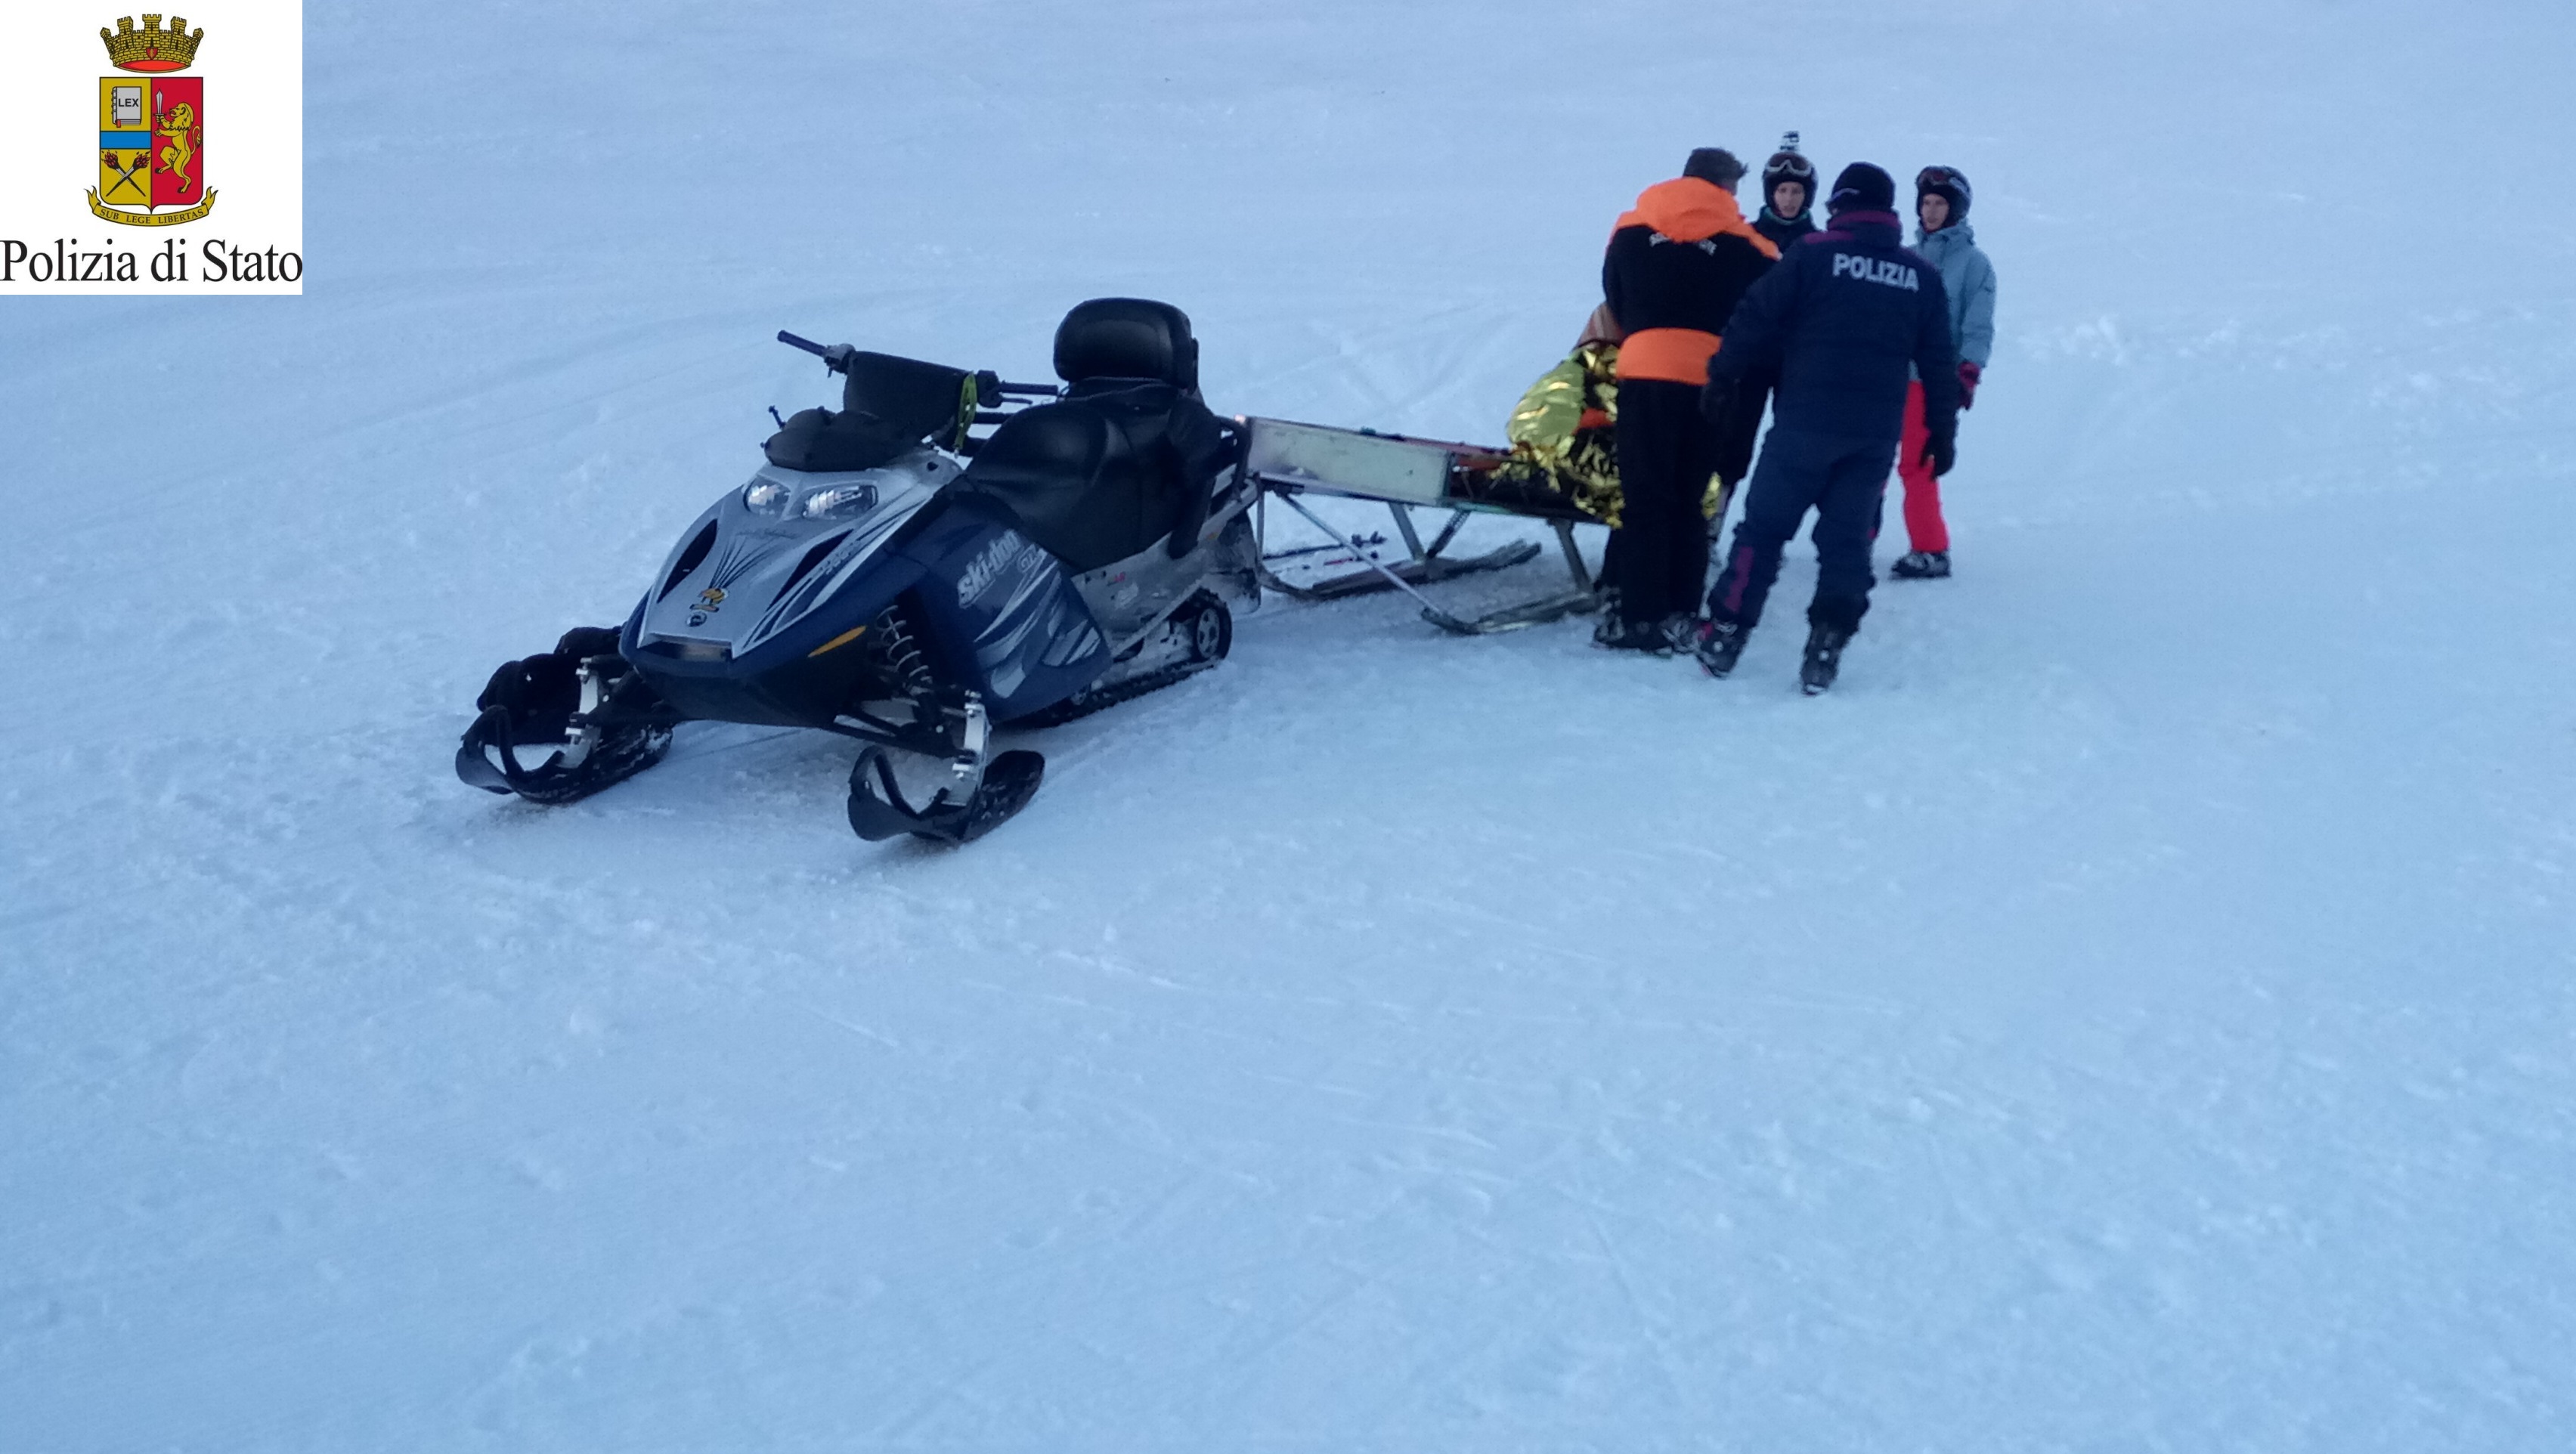 Intervento di soccorso della Polizia di Stato sulle piste da sci